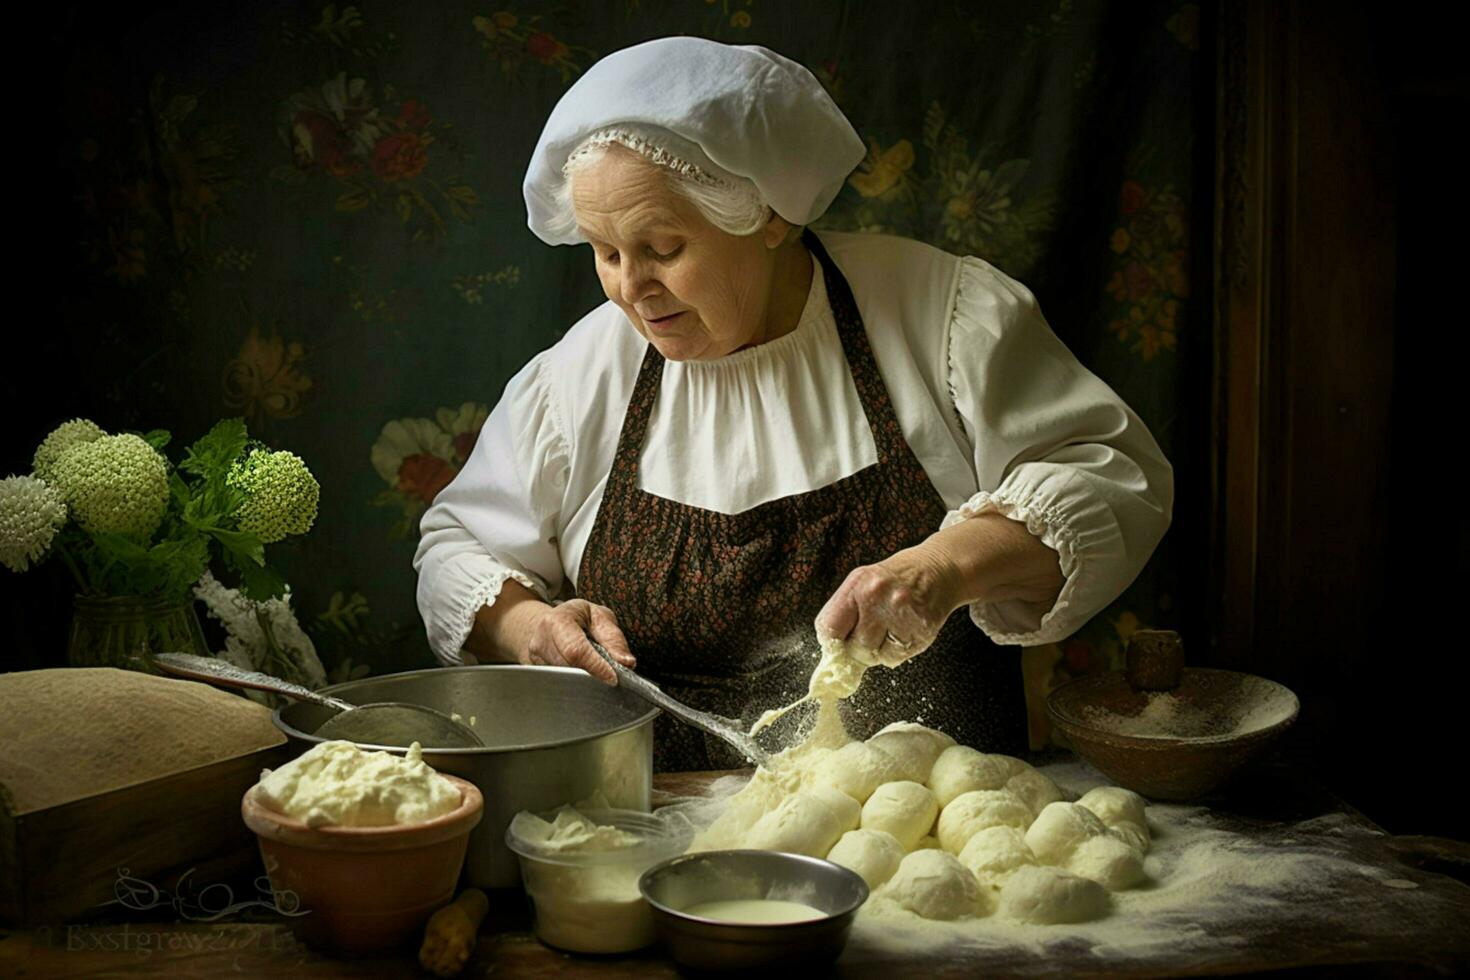 Frau Herstellung püriert Zuhause Kartoffel foto